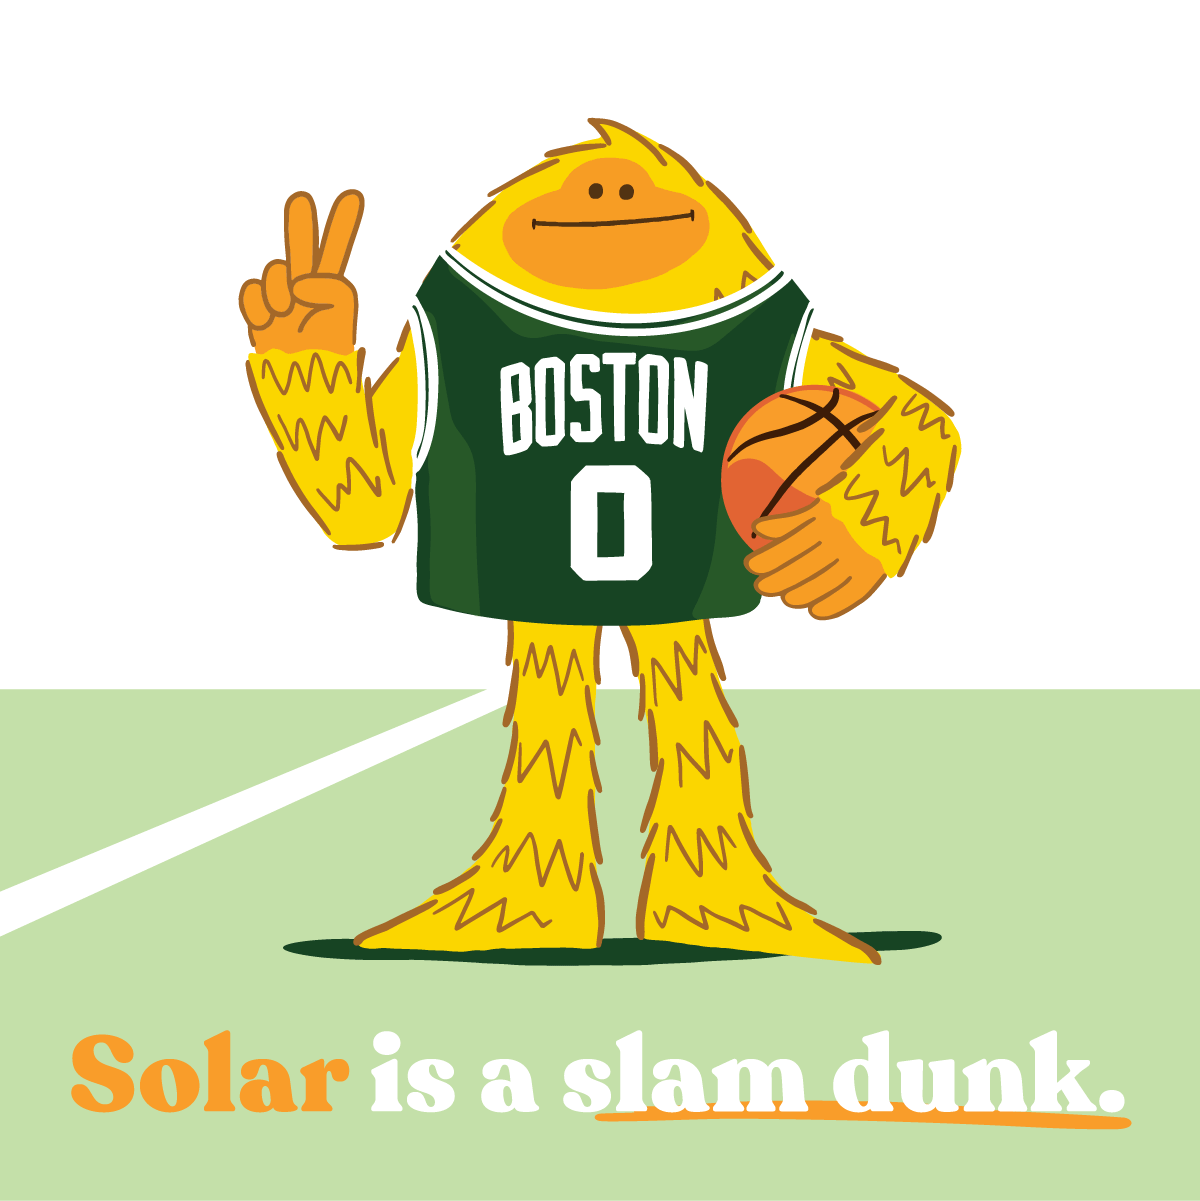 Sunsquatch in a Boston jersey